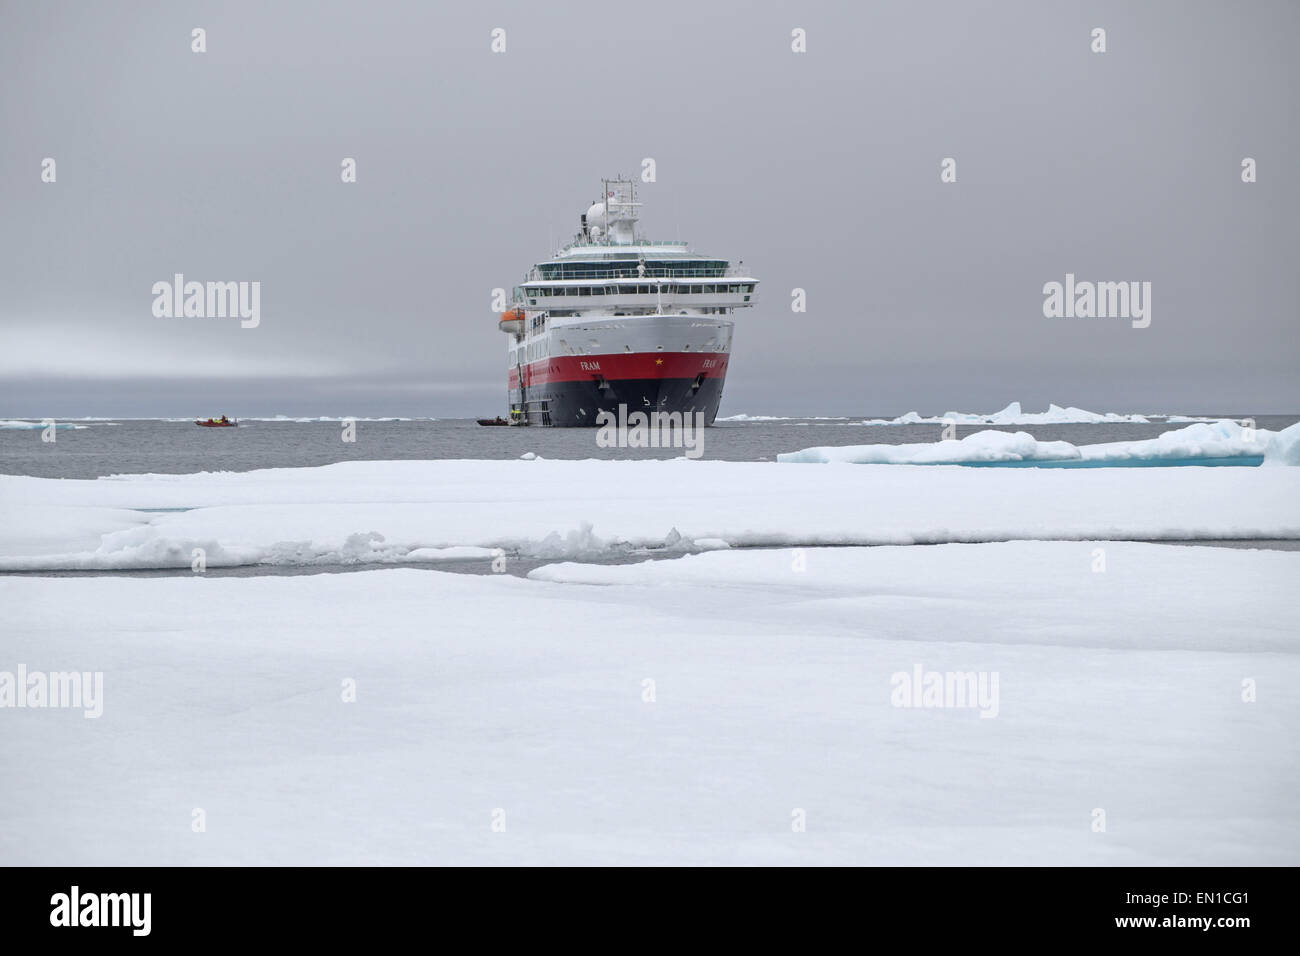 Bateau de croisière arctique mv fram au bord de la glace polaire du nord, août 2014, l'océan Arctique au nord de Spitzberg, Svalbard. Banque D'Images